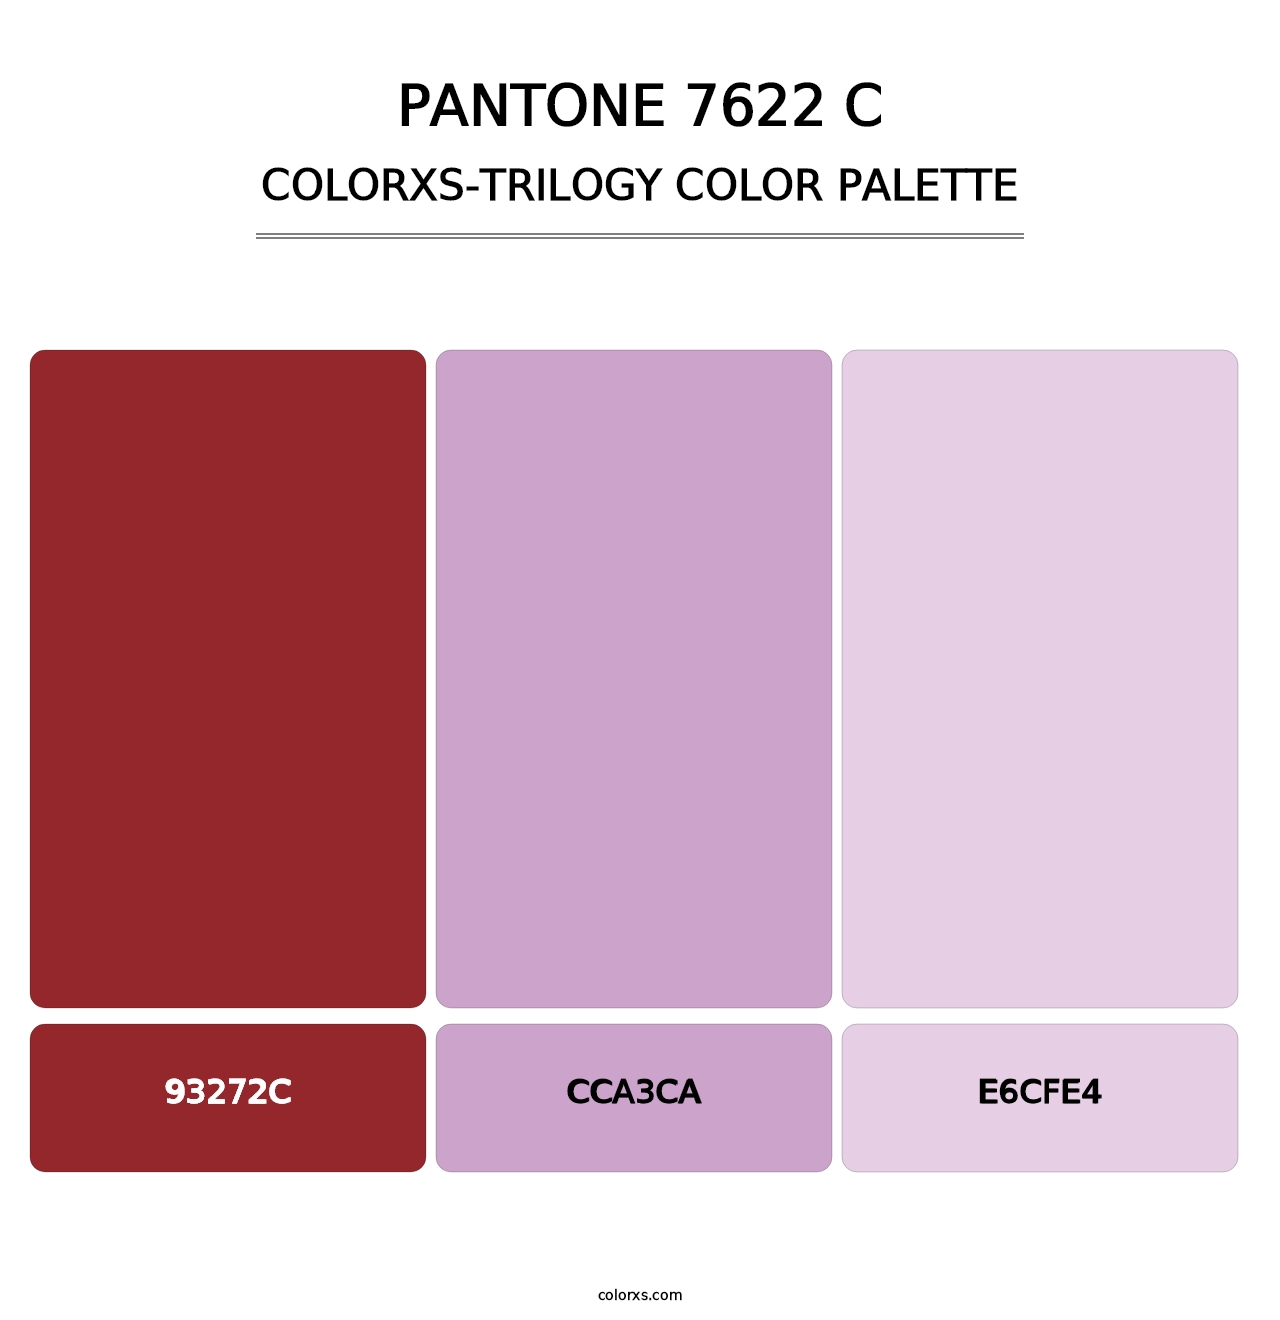 PANTONE 7622 C - Colorxs Trilogy Palette